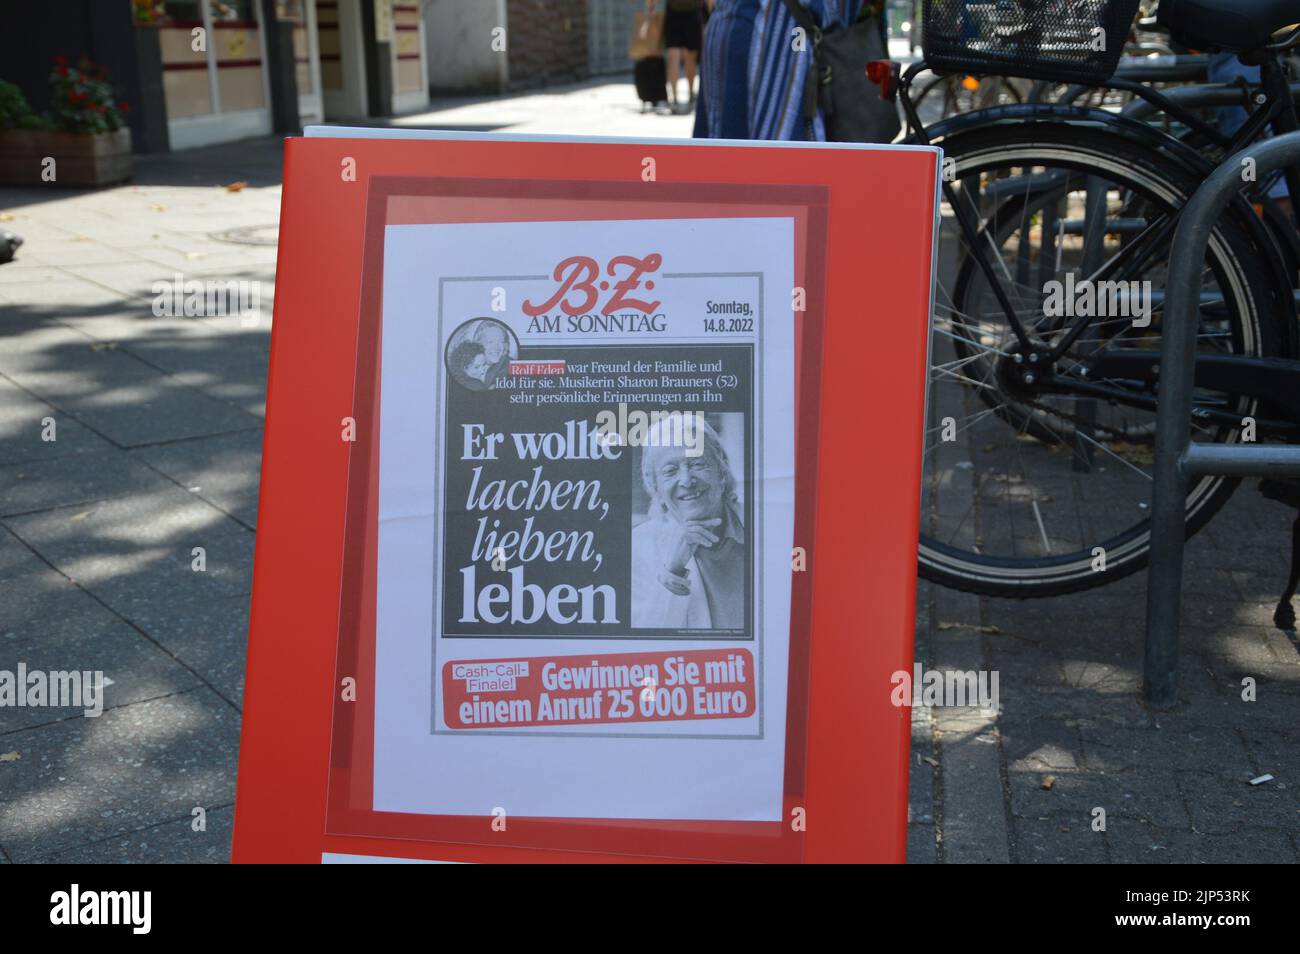 Berlín, Alemania - 14 de agosto de 2022 - B.Z. El periódico Bild recuerda a Rolf Eden 1930-2022 en su portada. (Markku Rainer Peltonen) Foto de stock